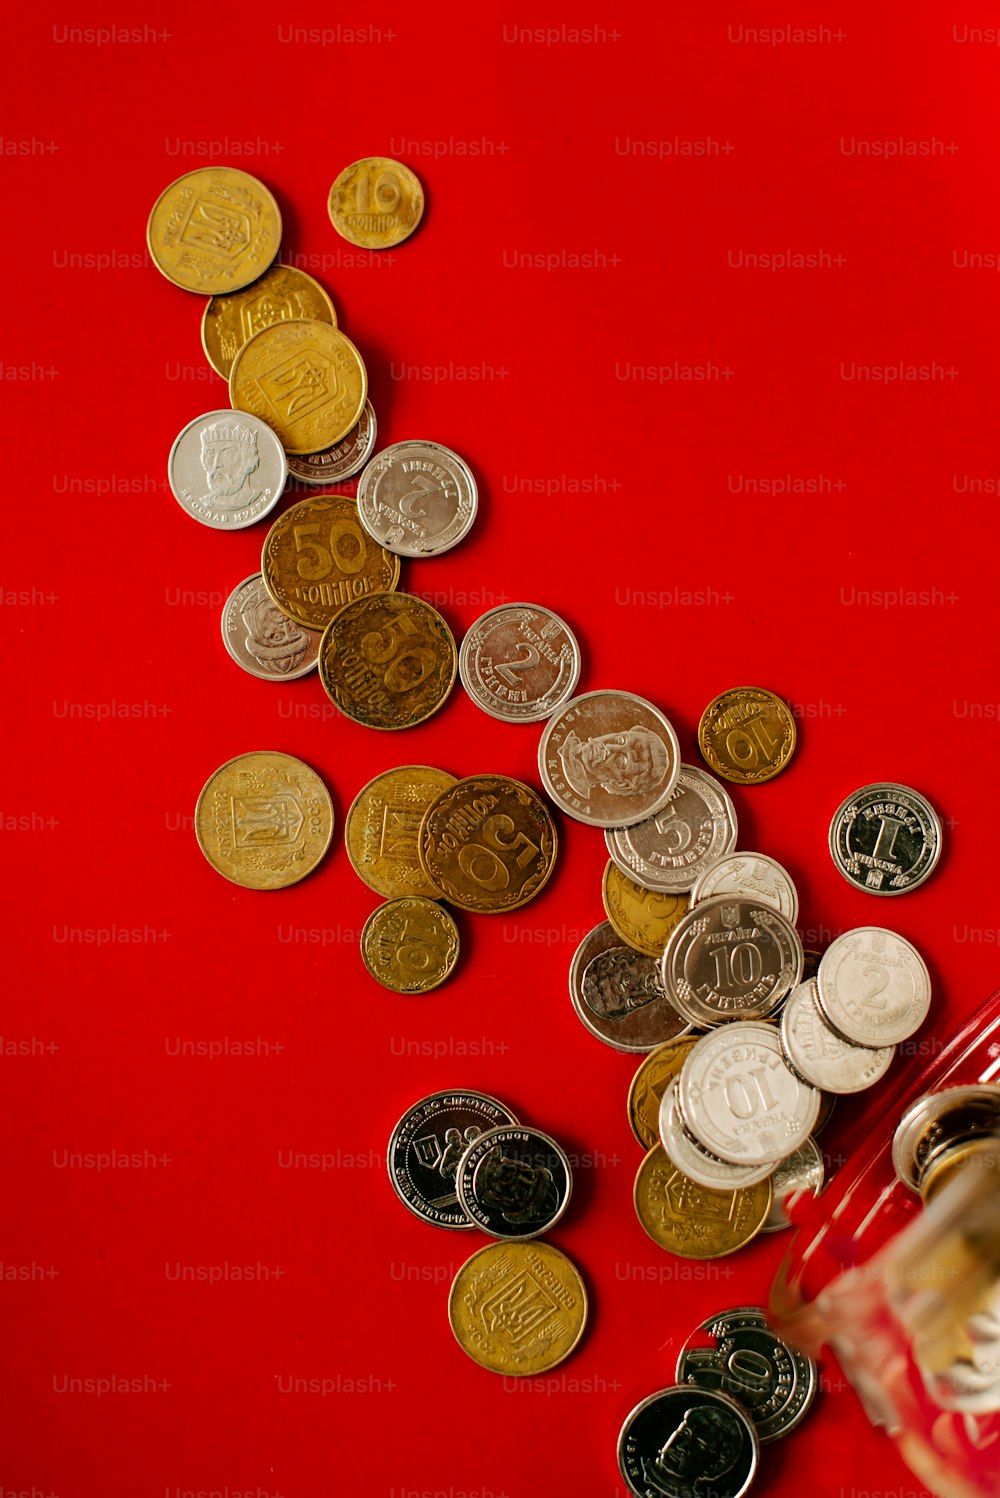 Un sac rouge rempli de nombreuses pièces de monnaie